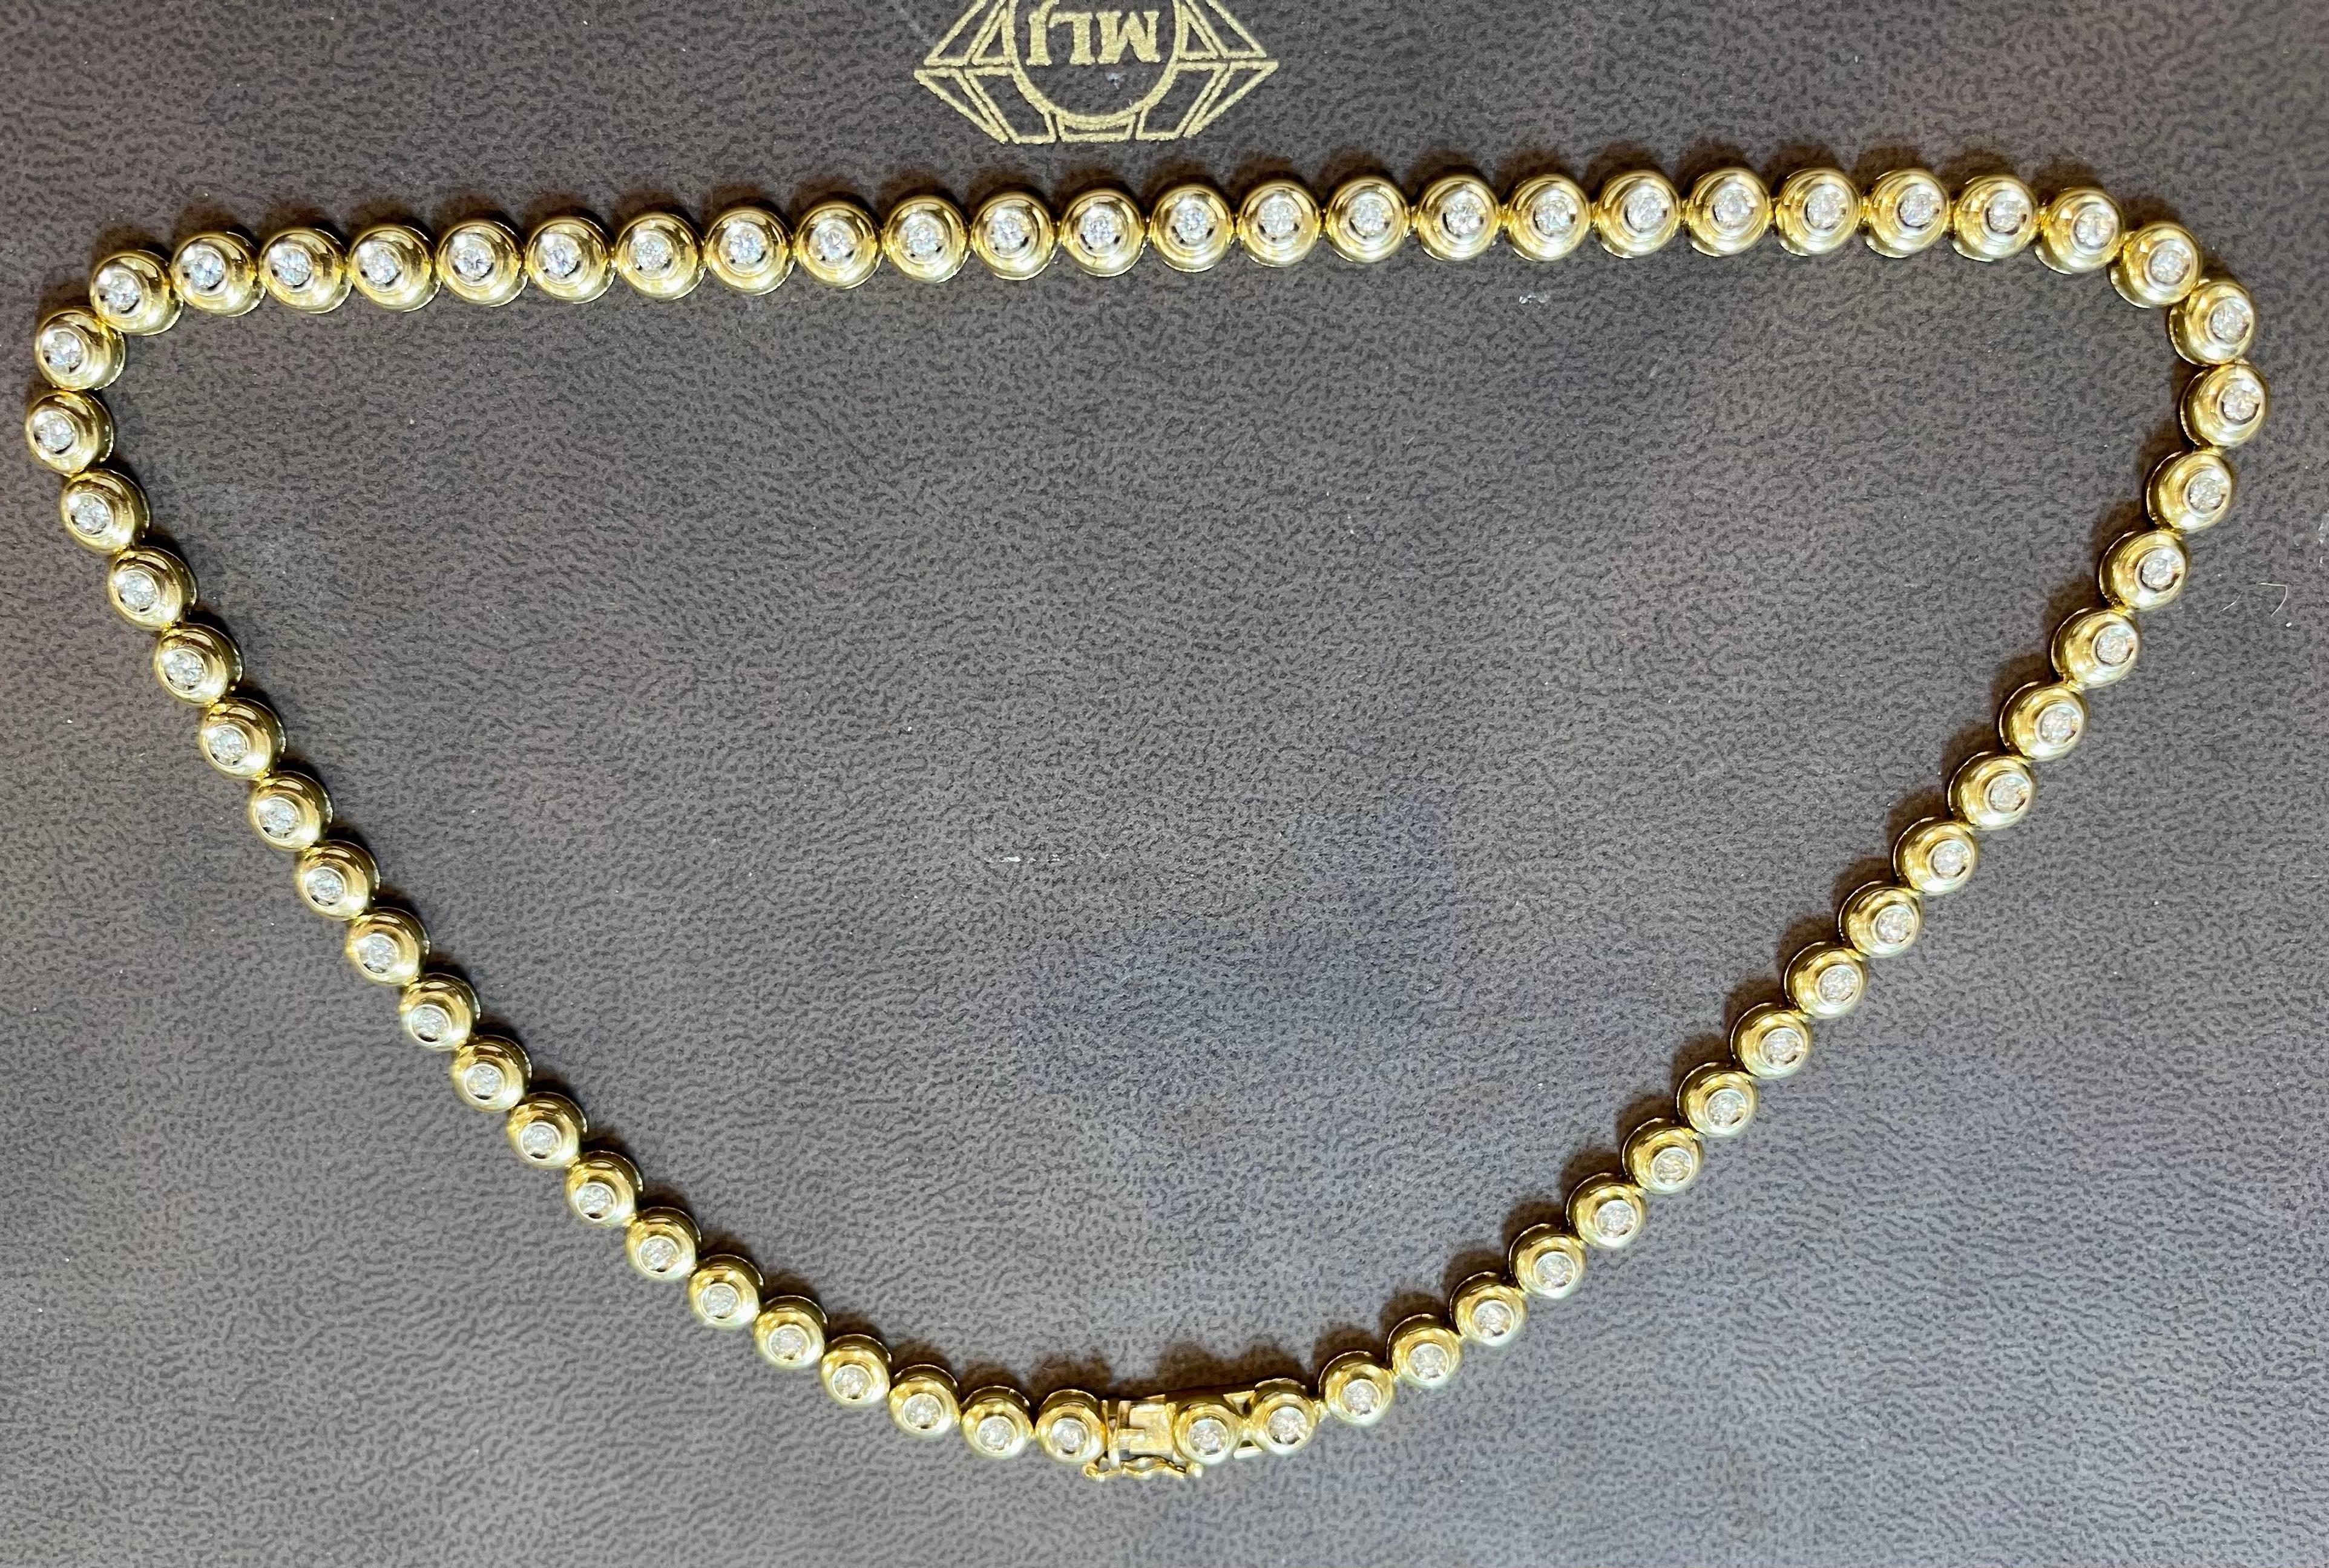 Round 6 Pointer, 4.5Ct Diamond Tennis Necklace 18Karat Yellow Gold 52 Gm, Unisex 11